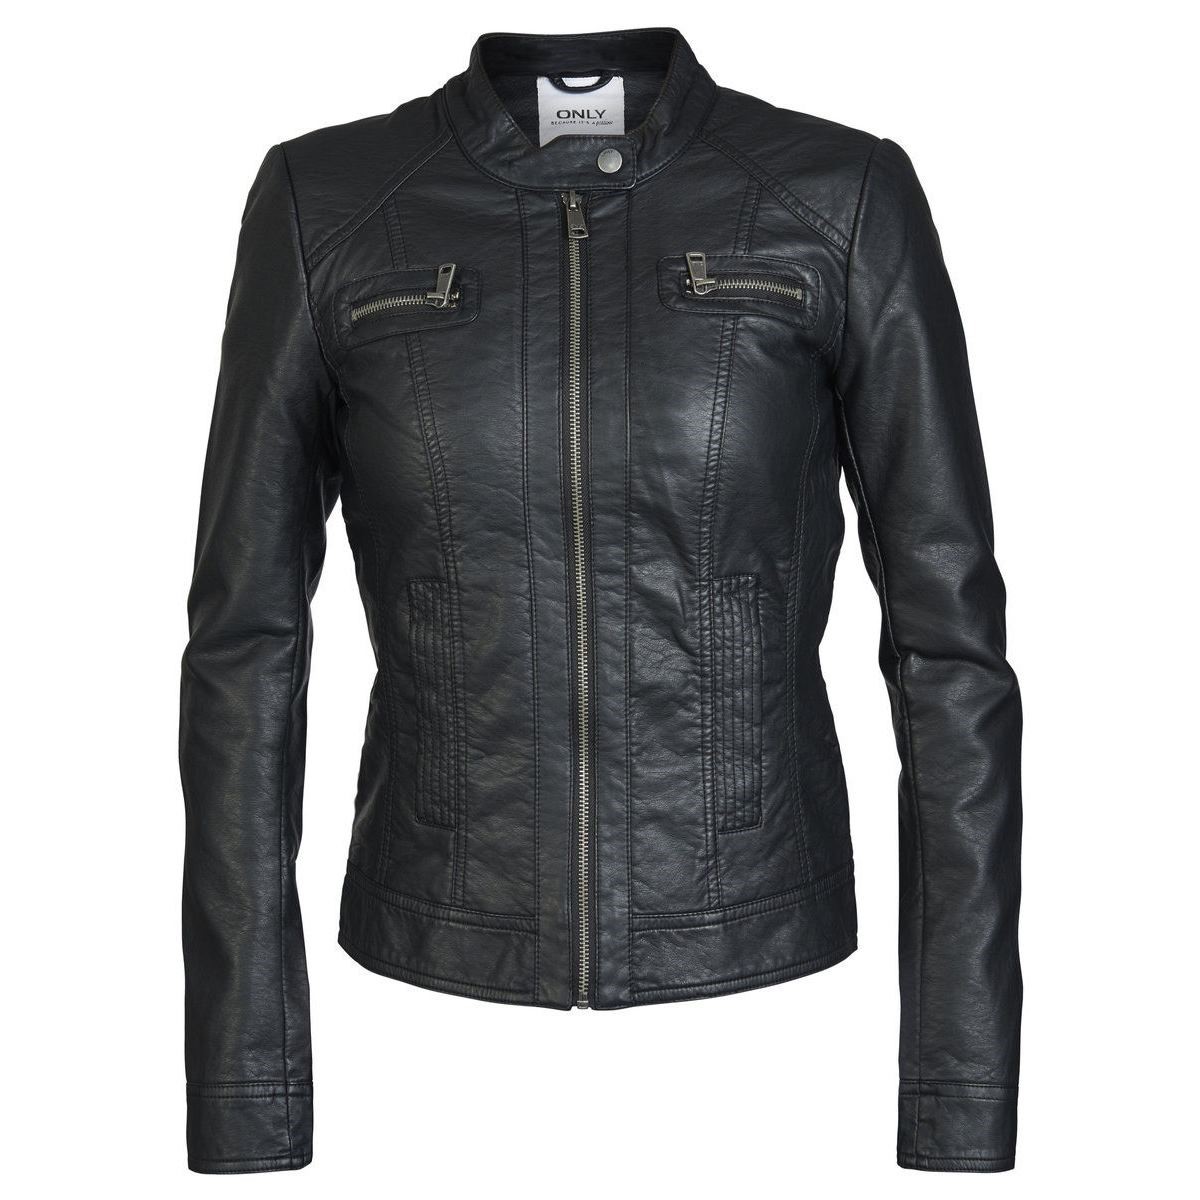 Only Kadın Ceket 15081400 Black